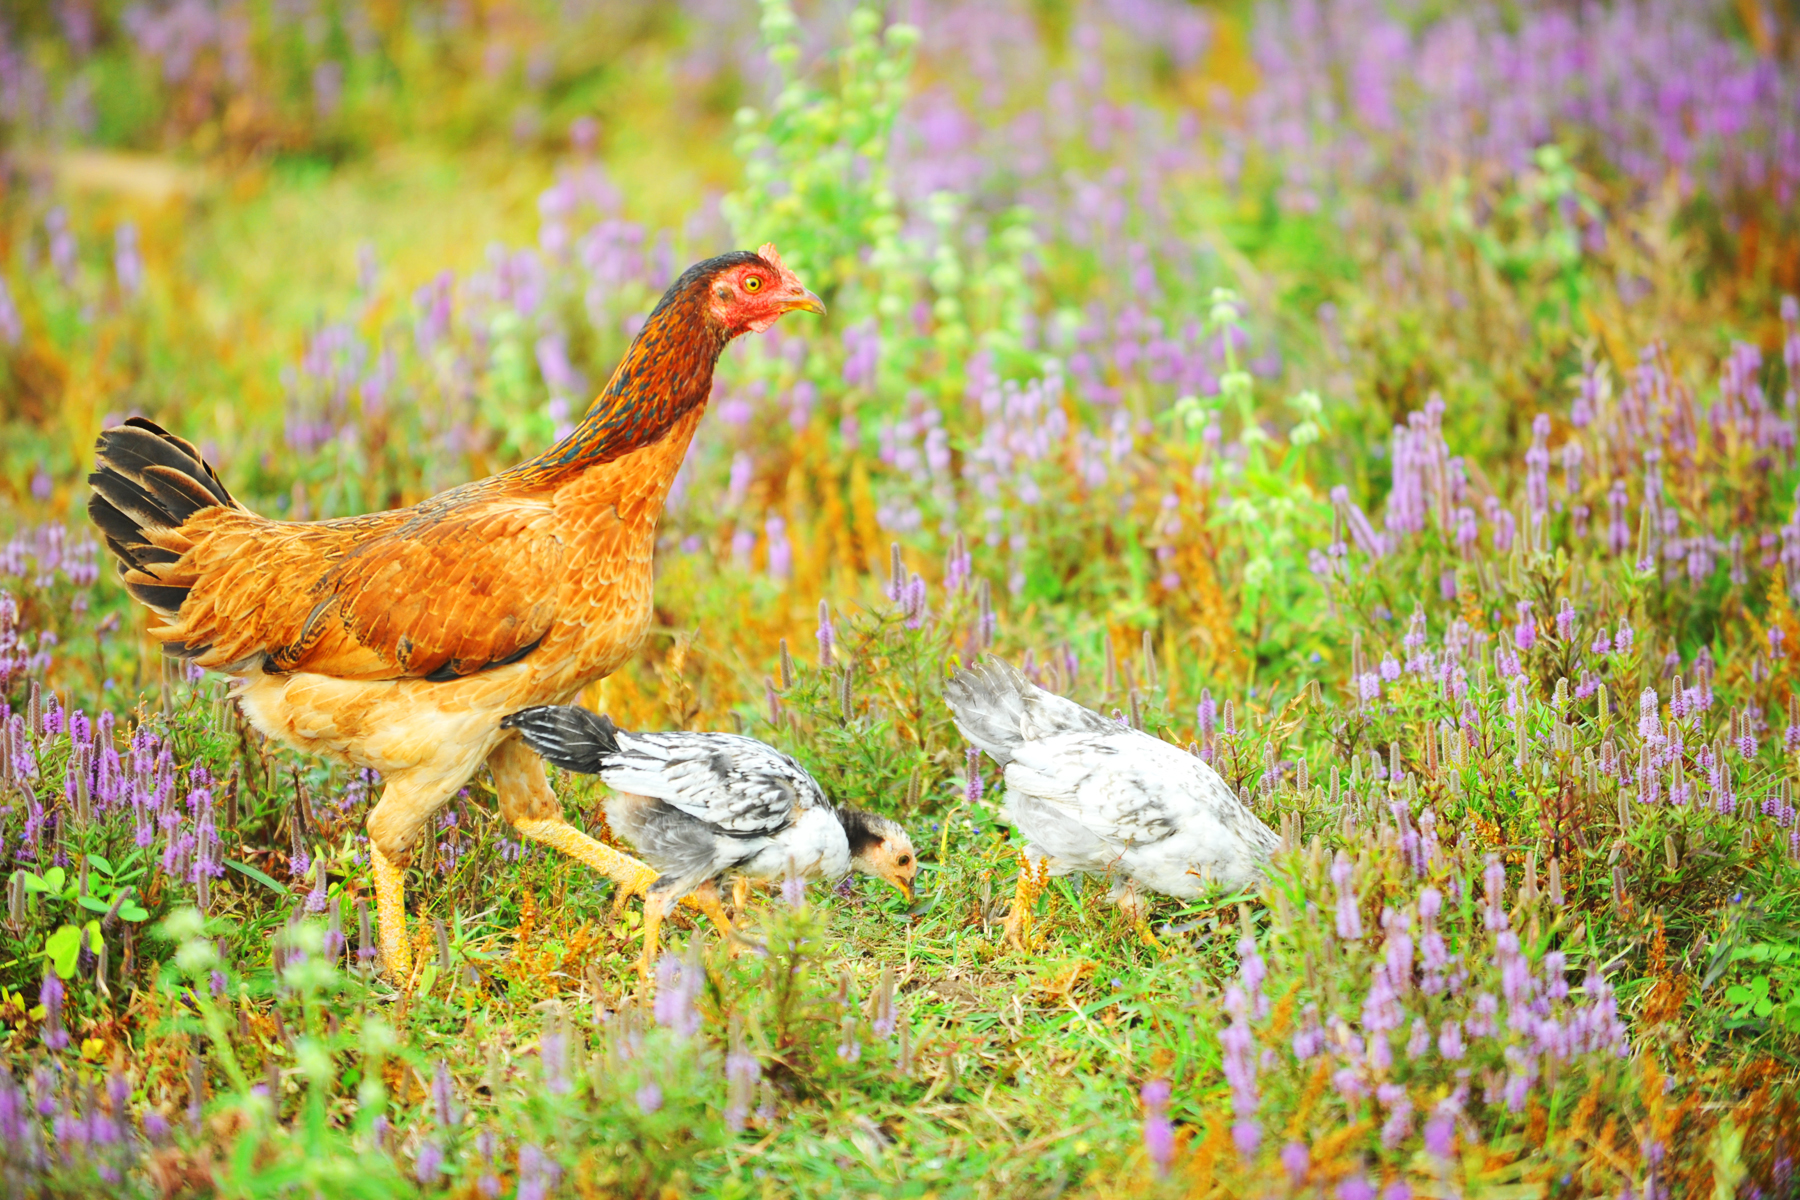 Bầy gà chen lẫn giữa đồng cỏ tạo cảm giác yên bình